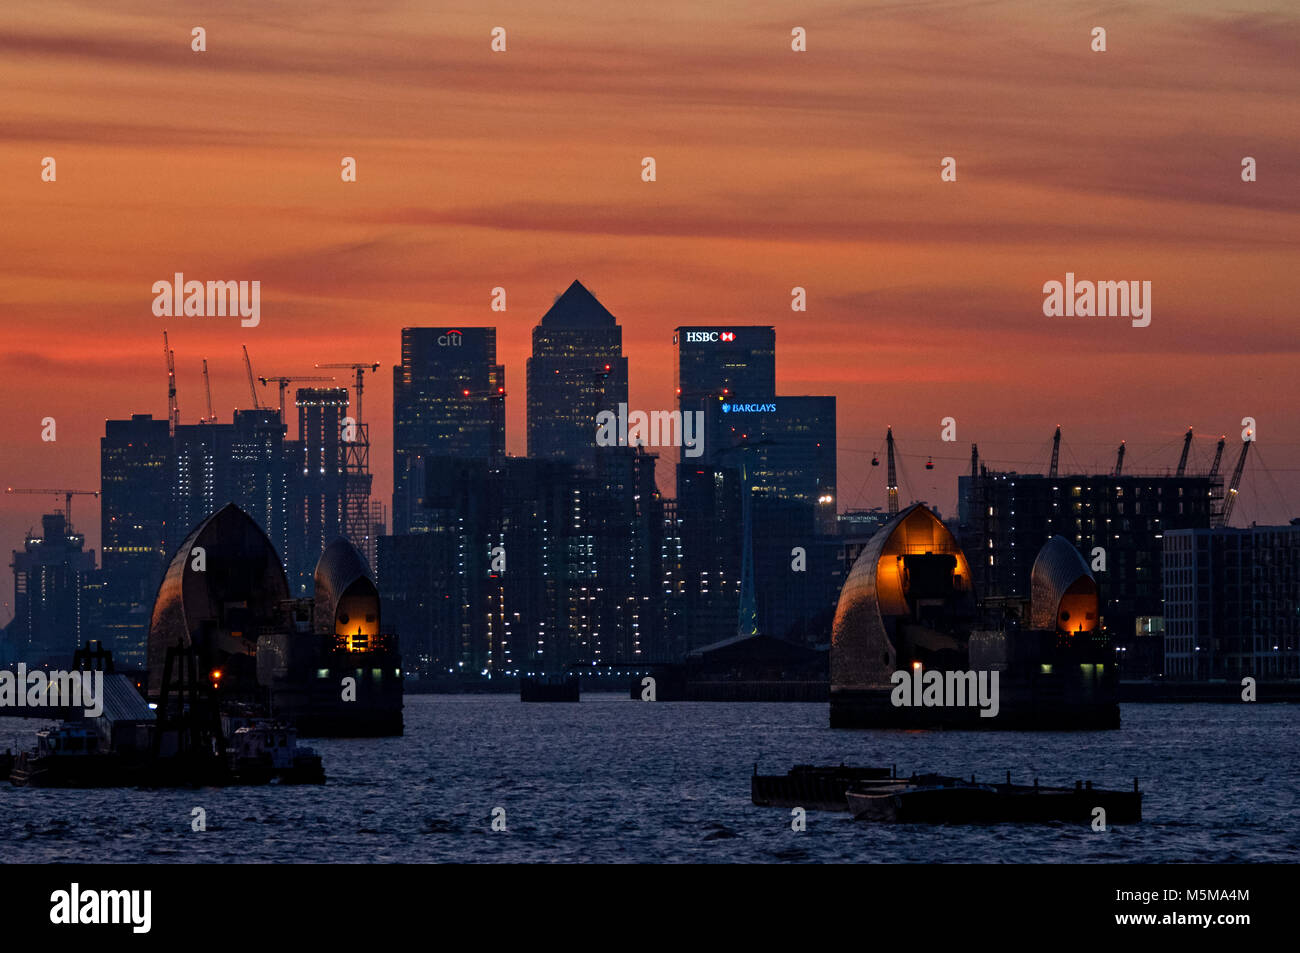 Canary Wharf und Thames Barrier bei Sonnenuntergang, London, England, Vereinigtes Königreich, Großbritannien Stockfoto